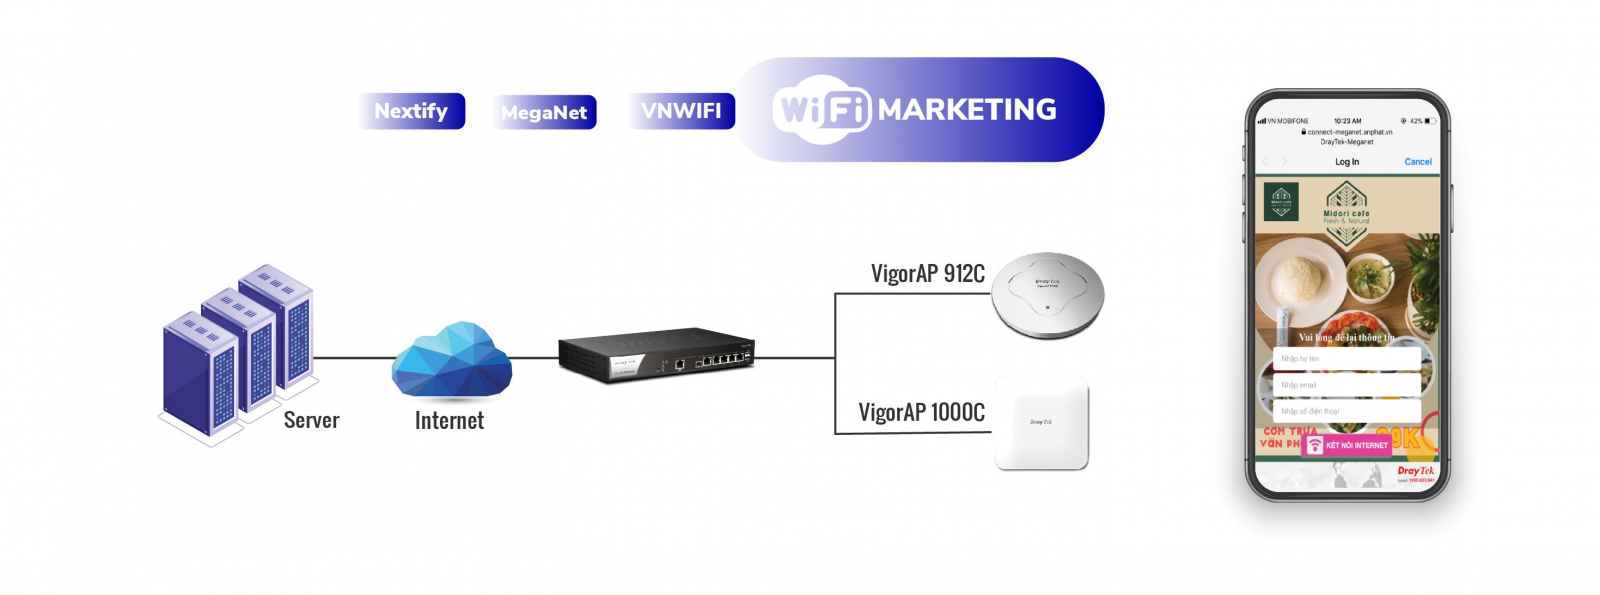 Vigor2962 2.5G Security VPN Router